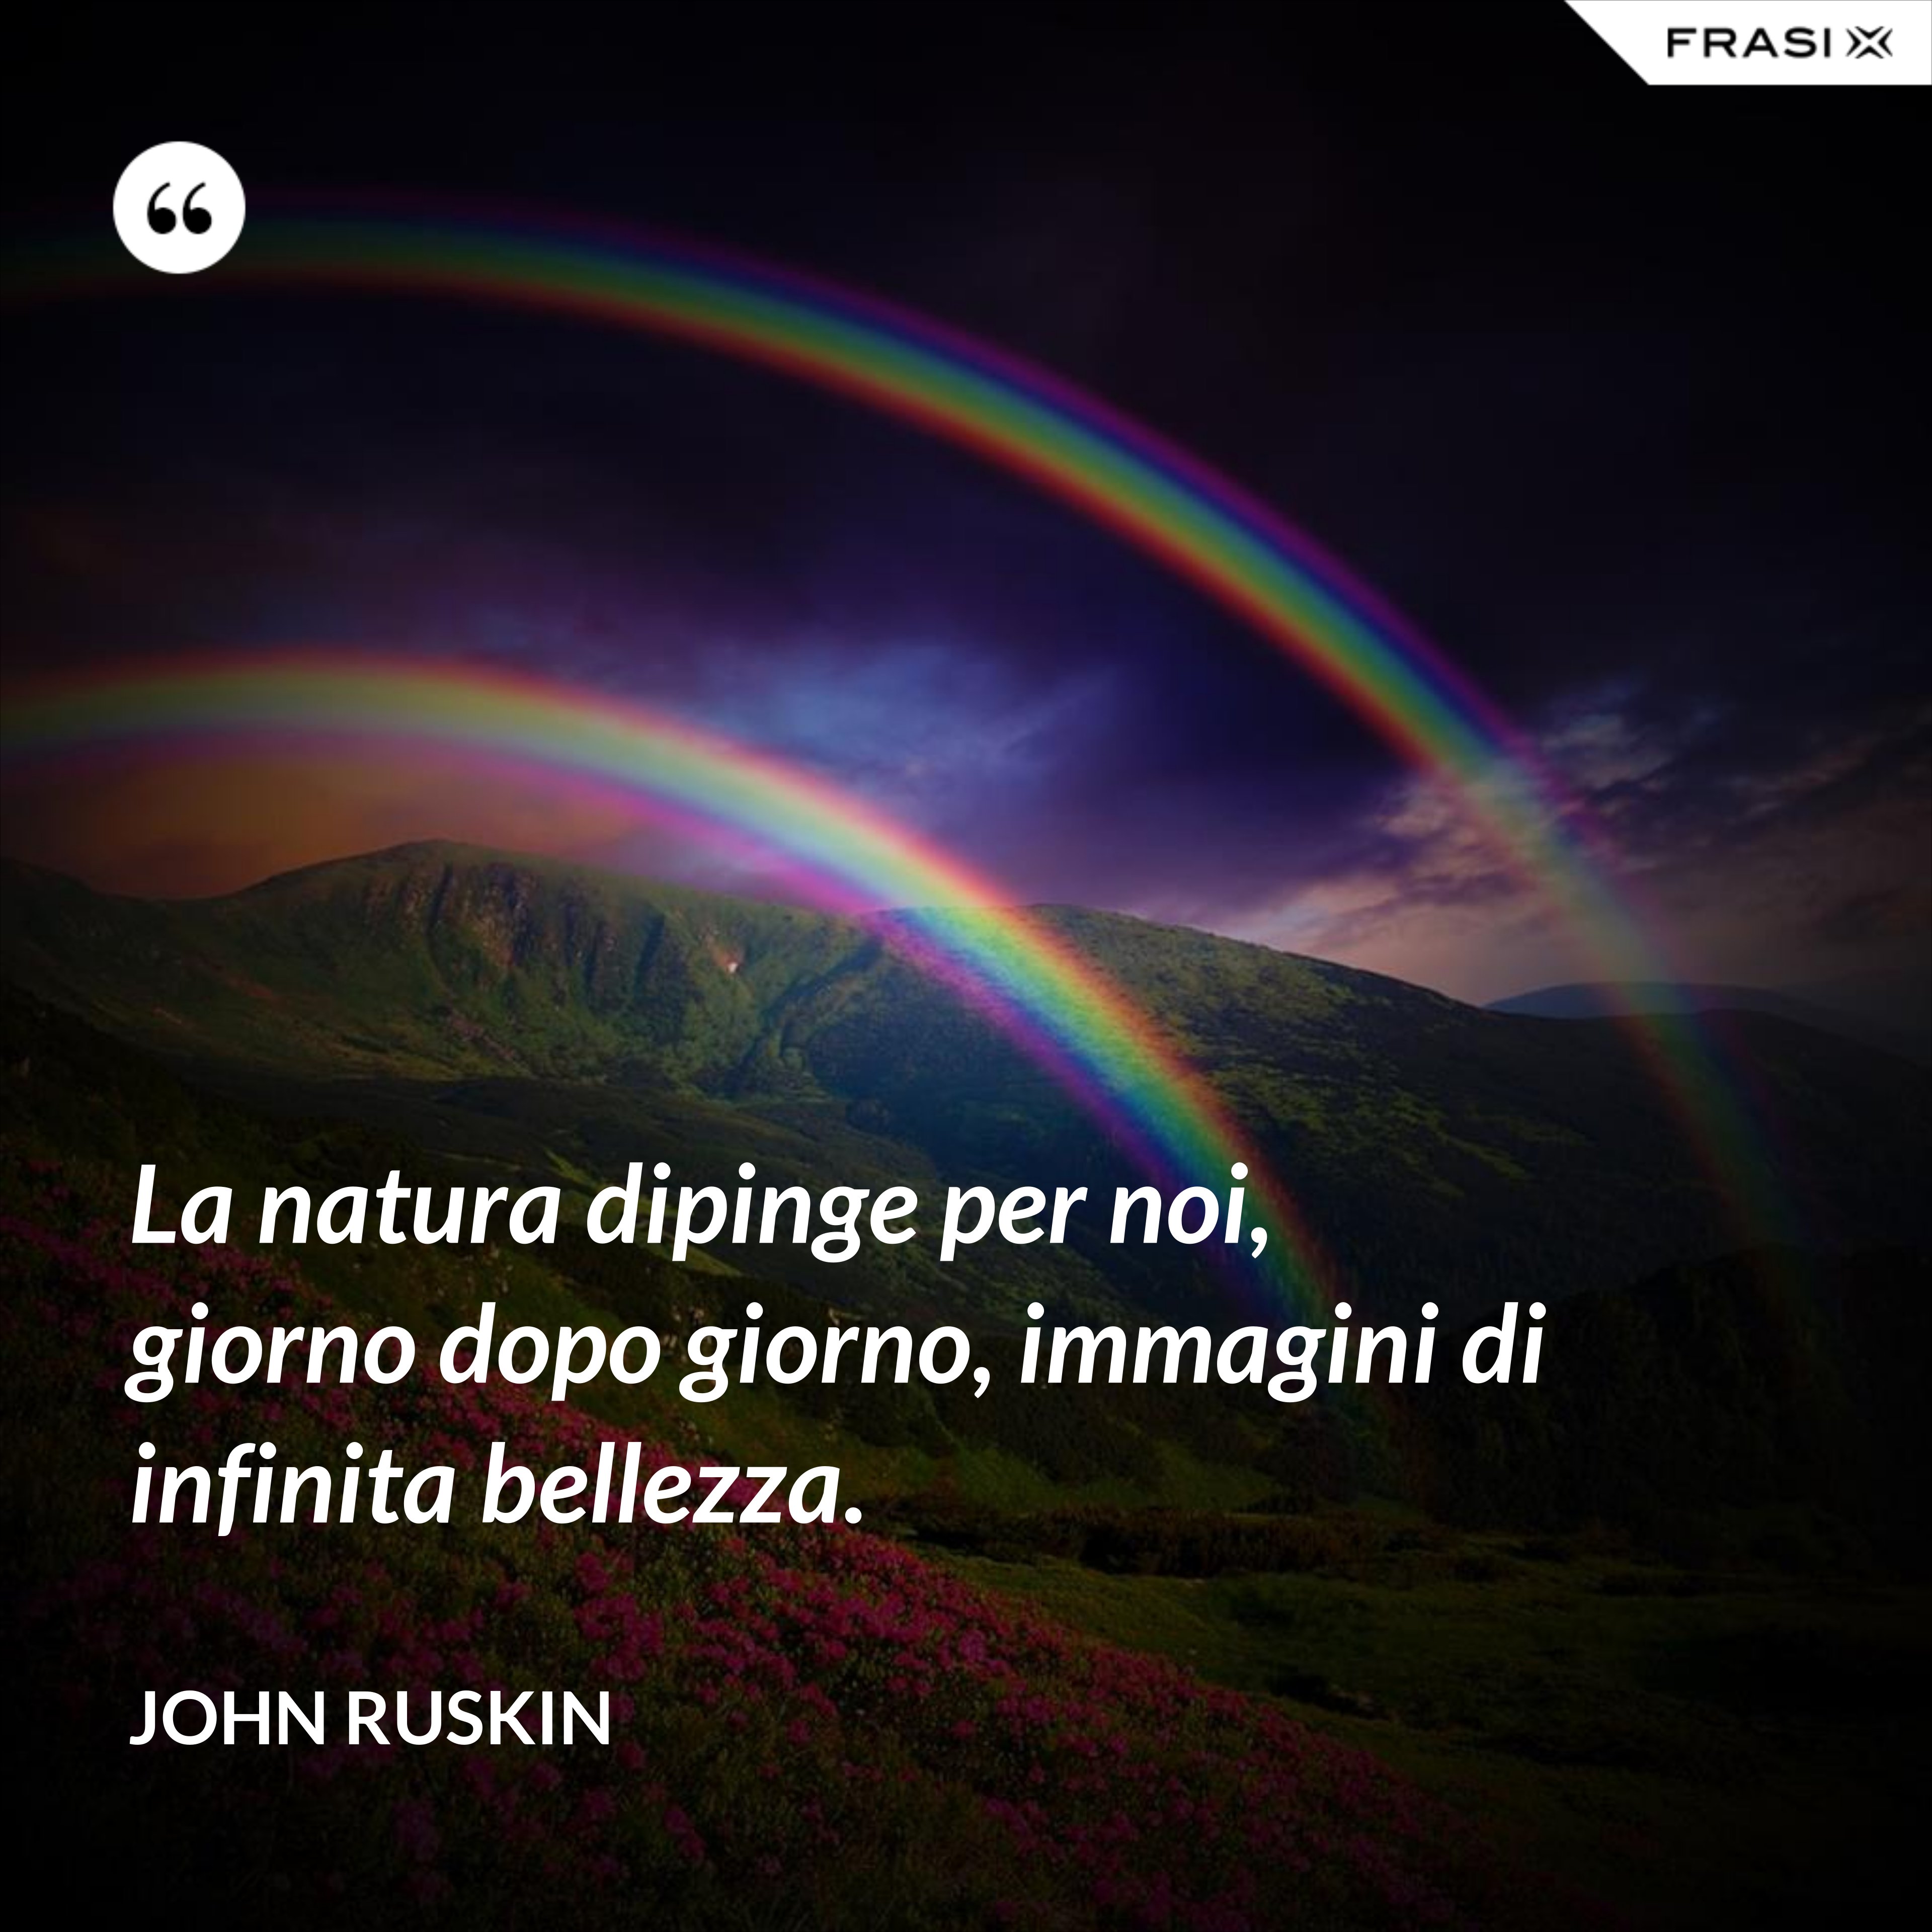 La natura dipinge per noi, giorno dopo giorno, immagini di infinita bellezza. - John Ruskin